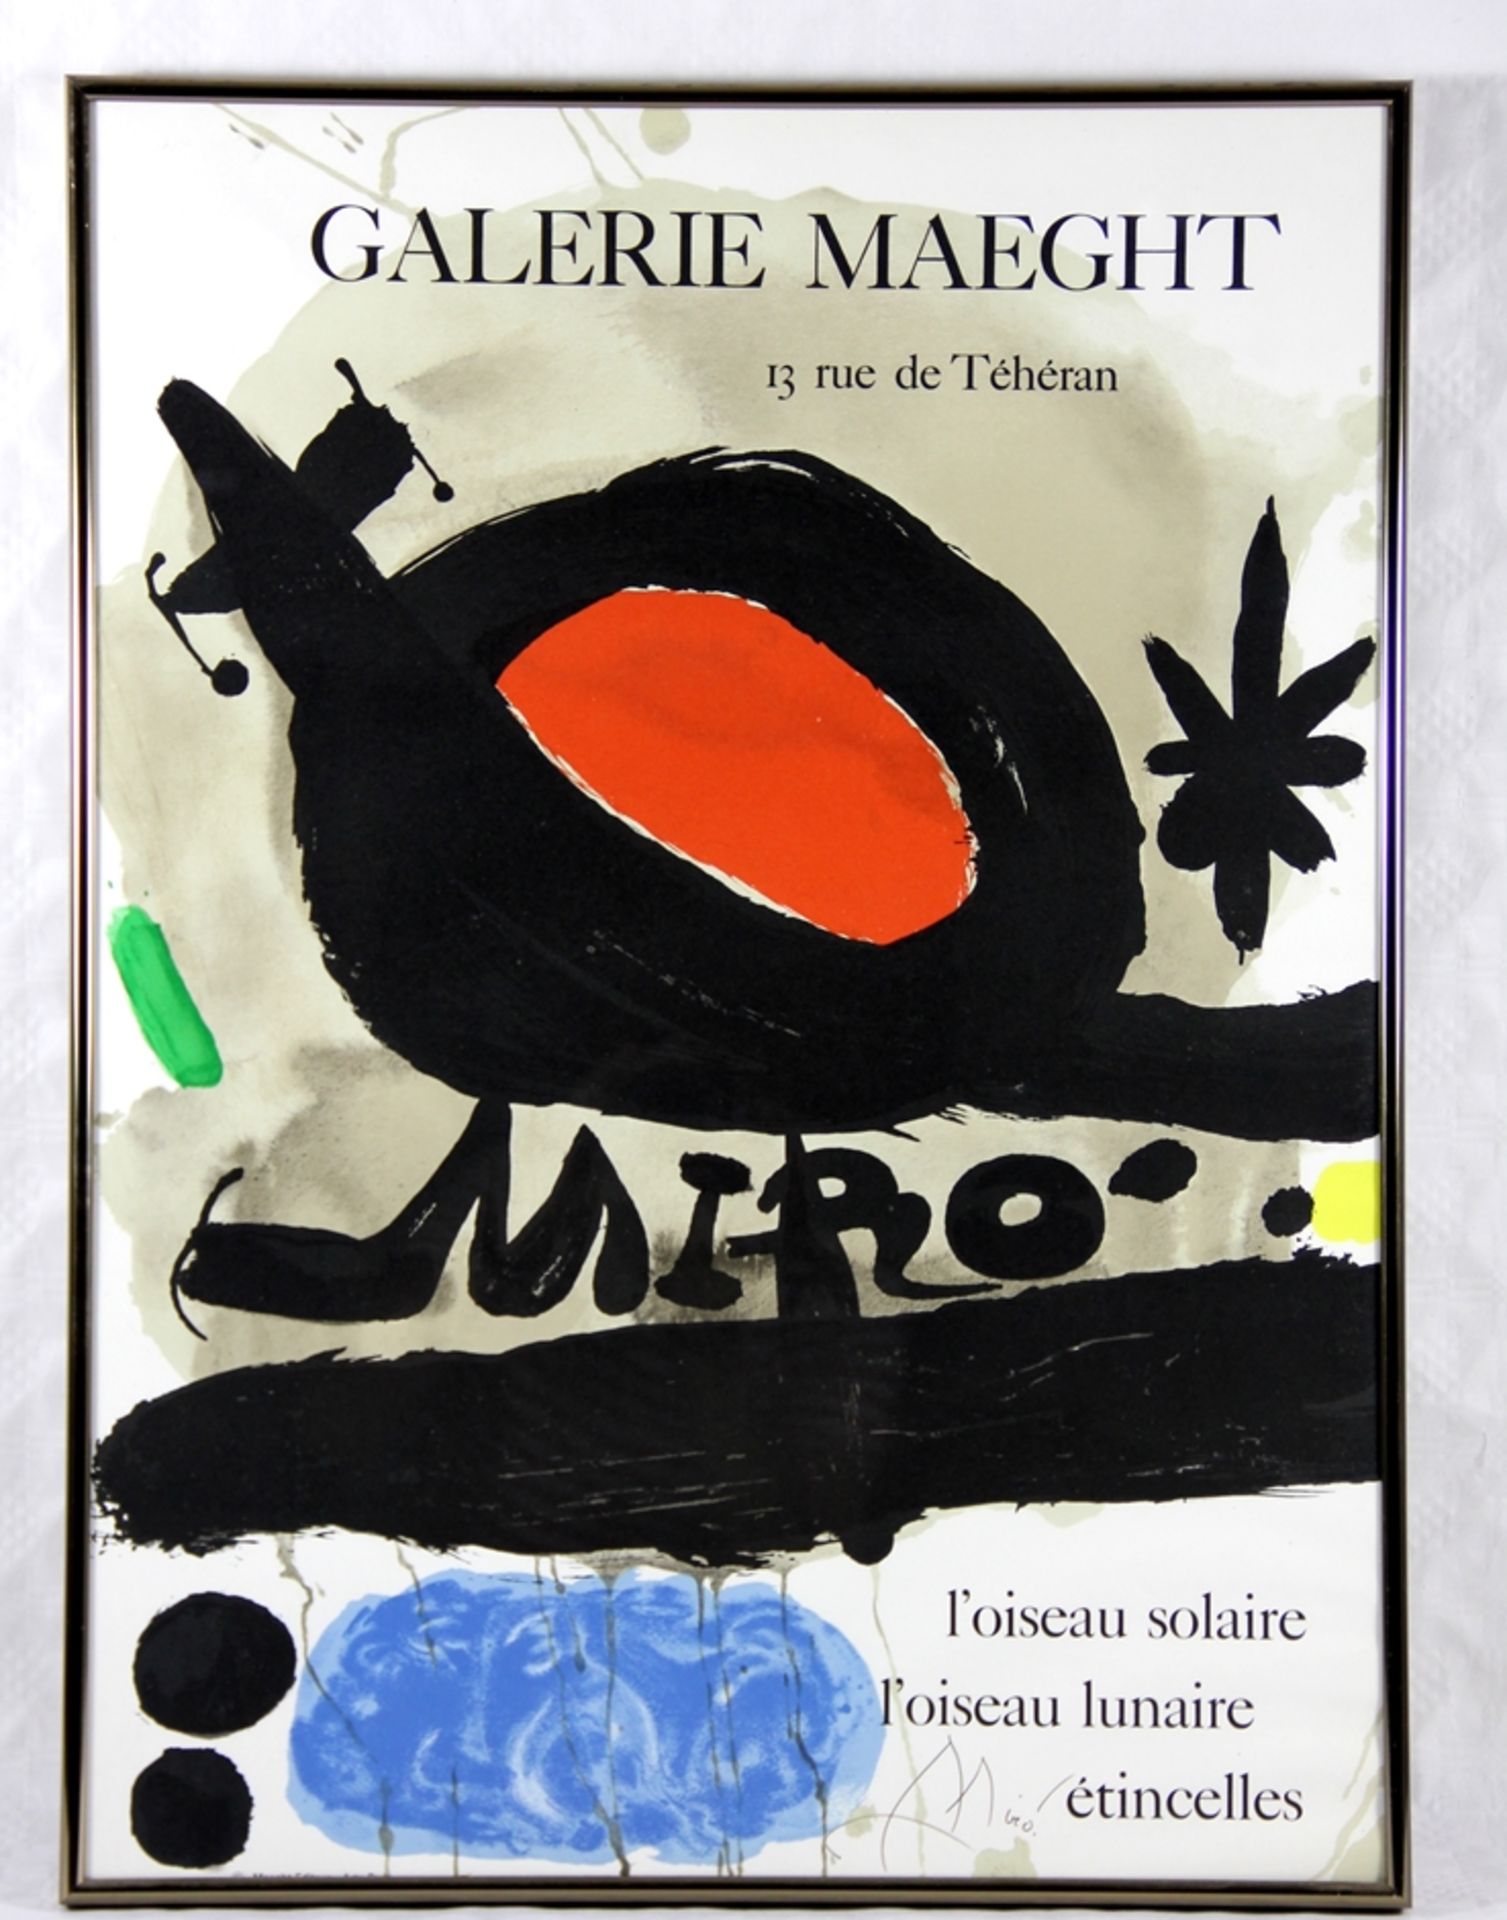 Ausstelungsplakat Joan Miró